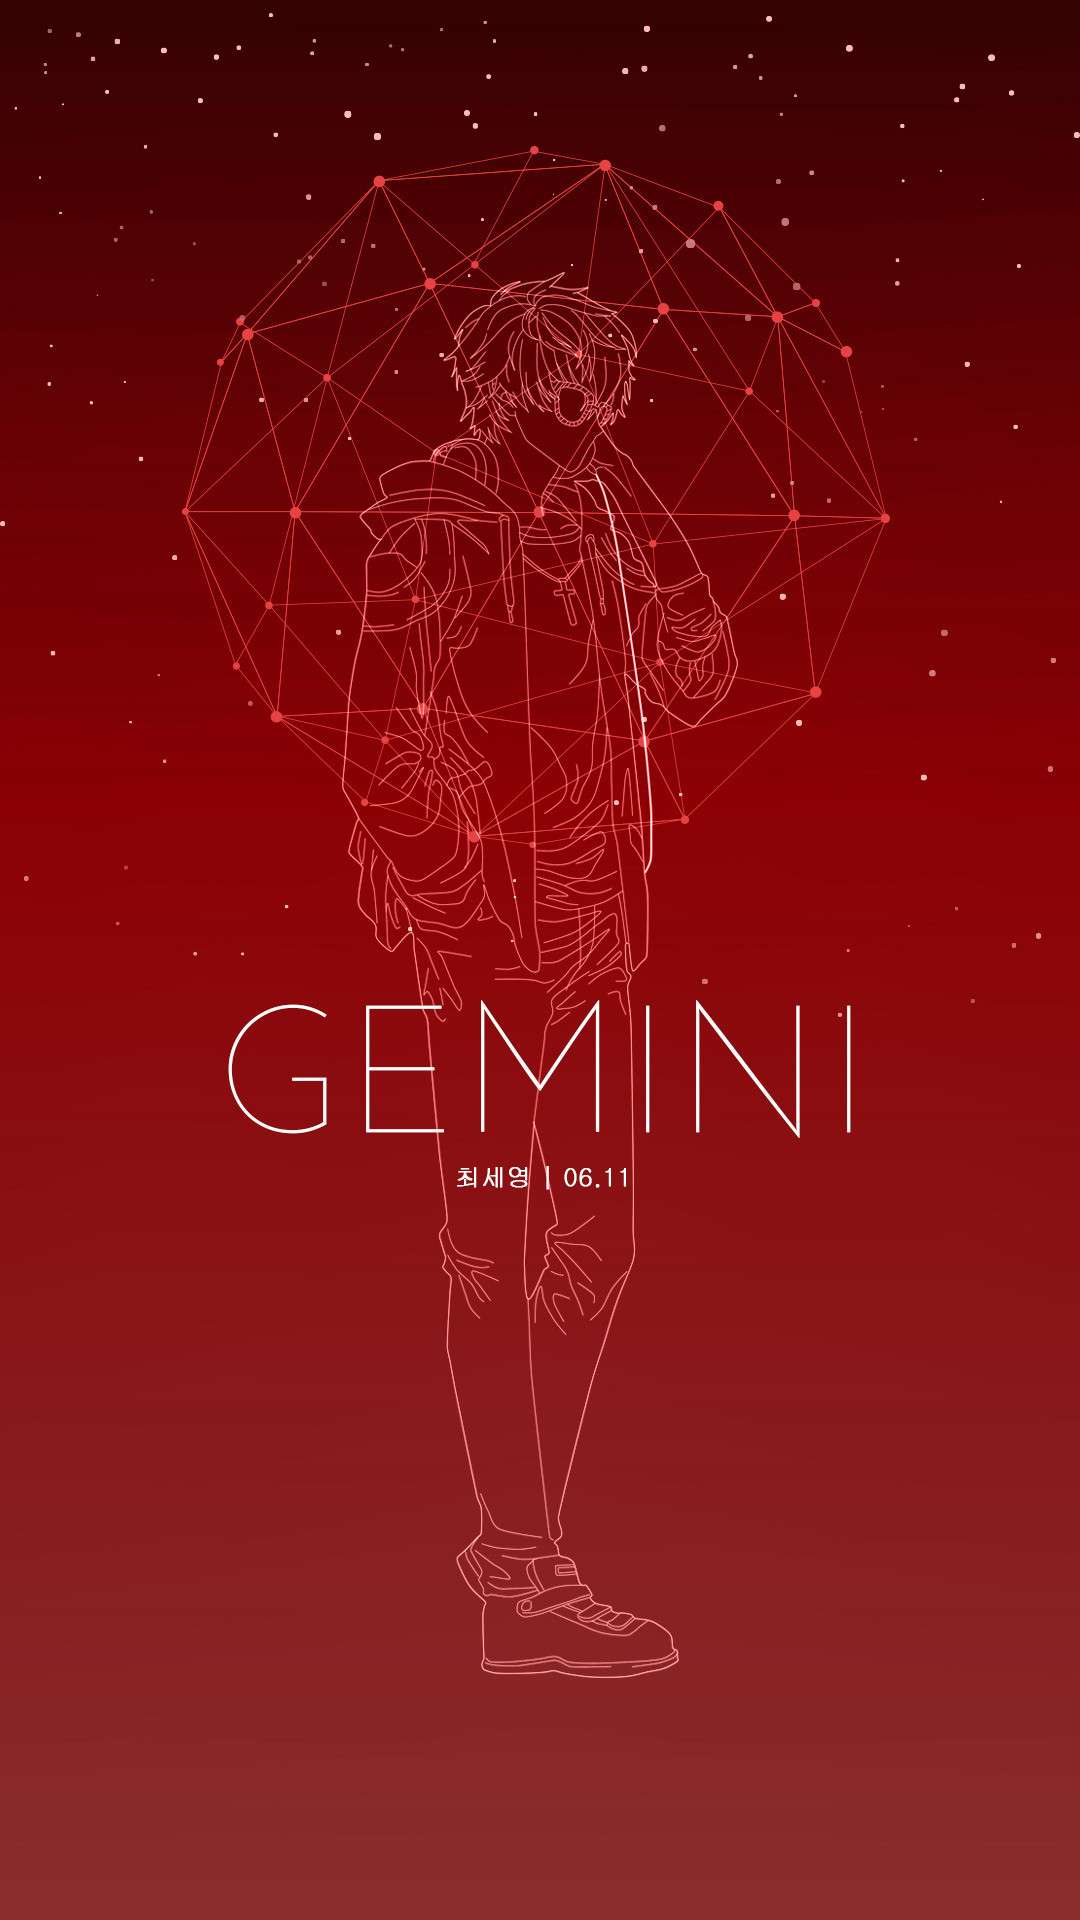 gemini wallpaper aesthetic red